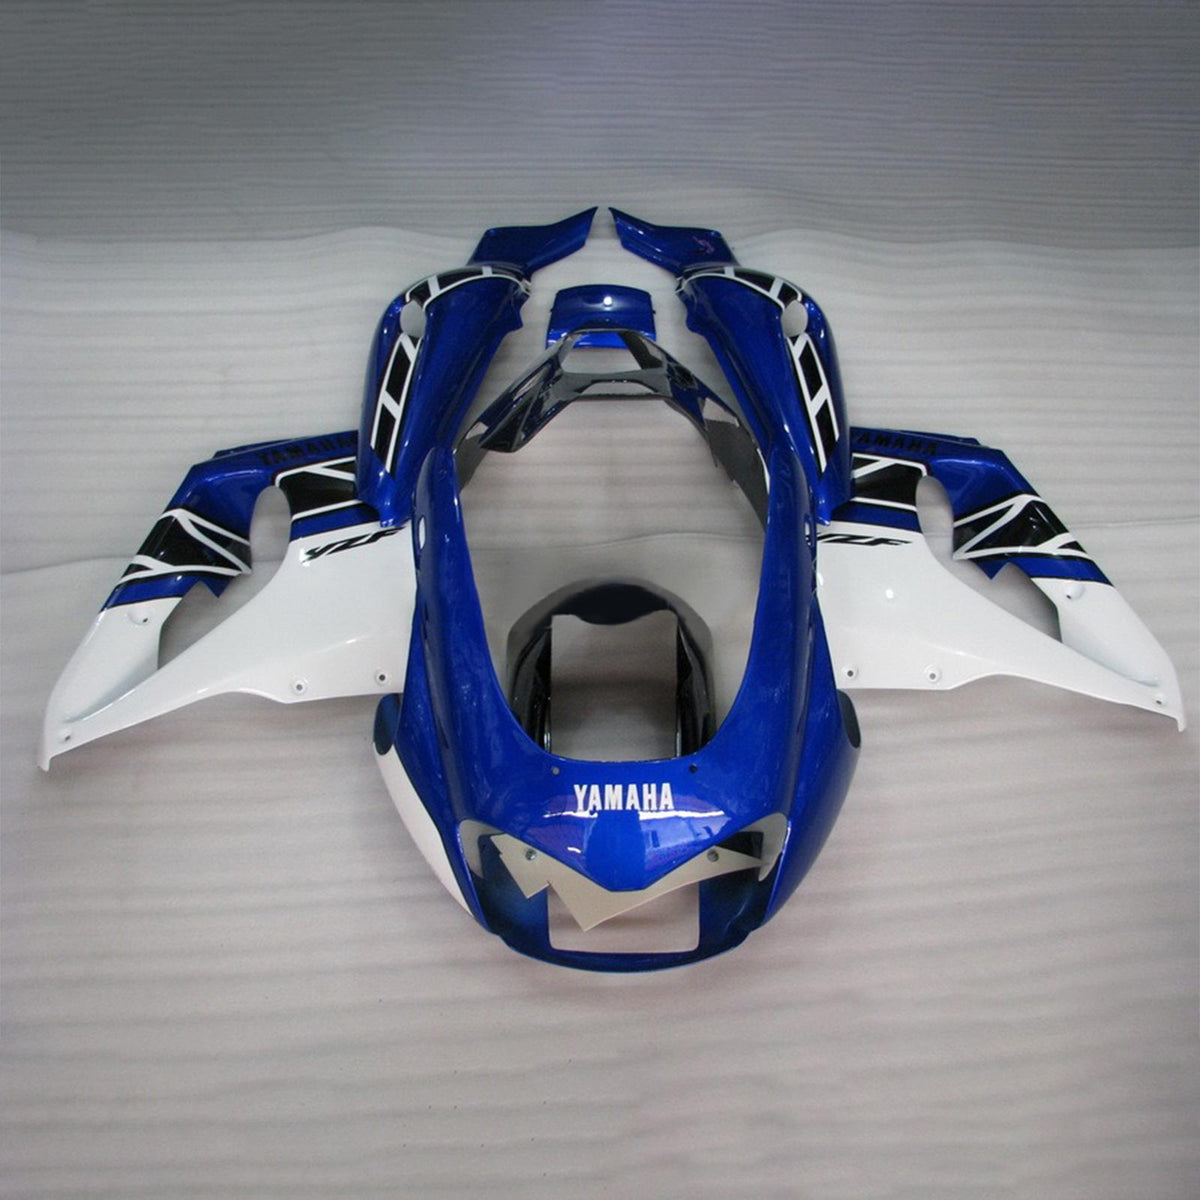 Amotopart 1997-2007 Yamaha YZF1000R Thunderace Fairing Blue&White Kit